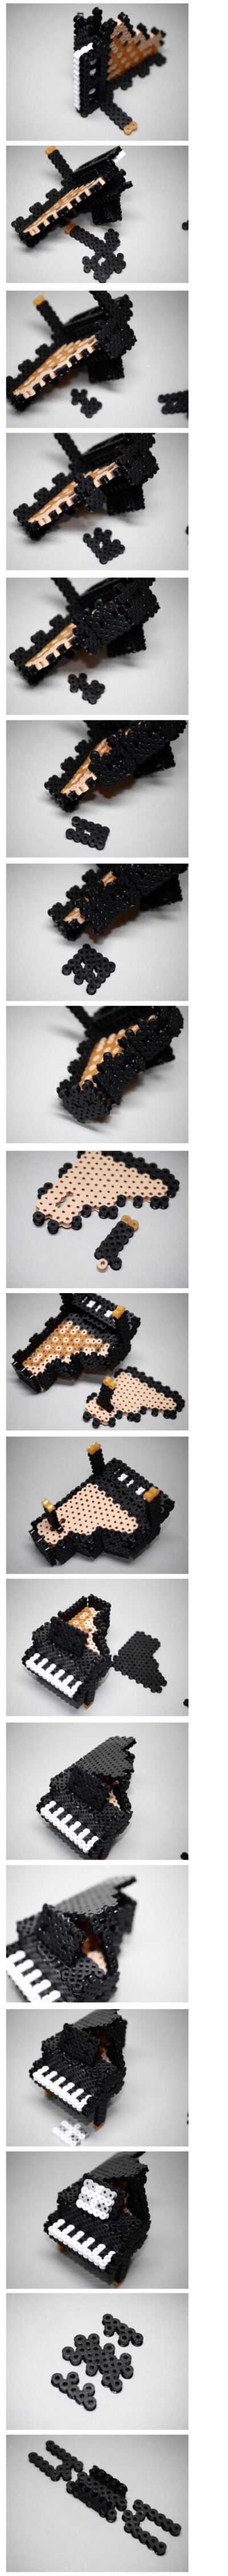 拼豆-立体三角钢琴 3D perler beads 